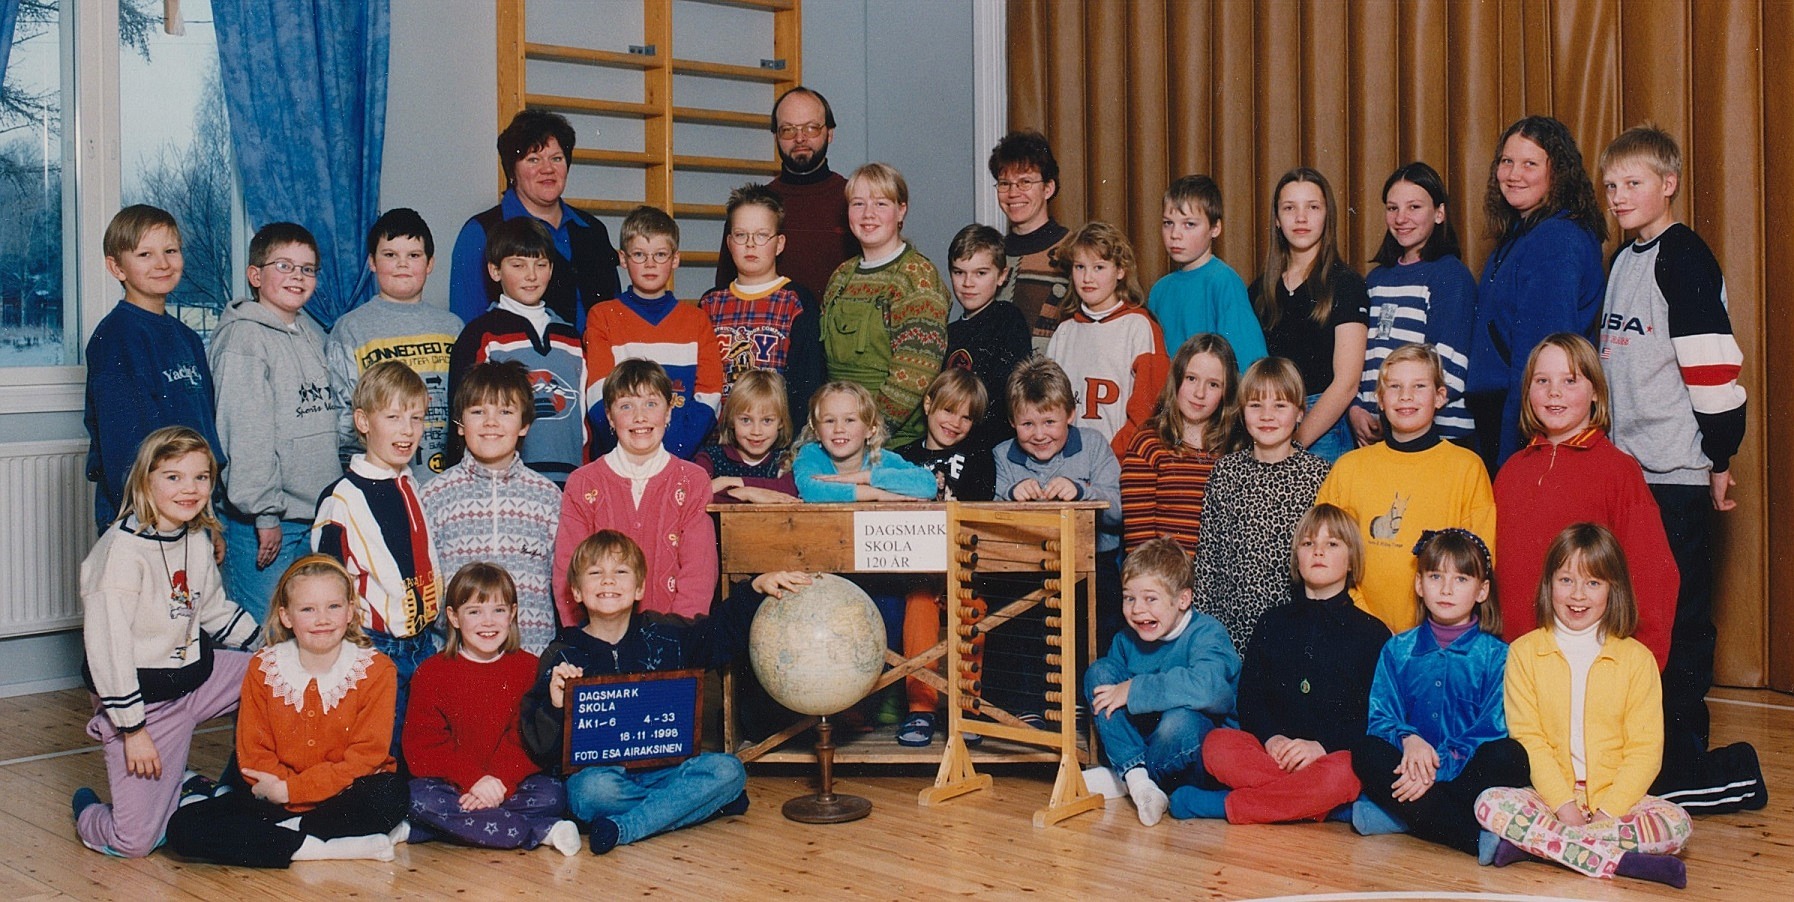 År 1998, Dagsmark skola.